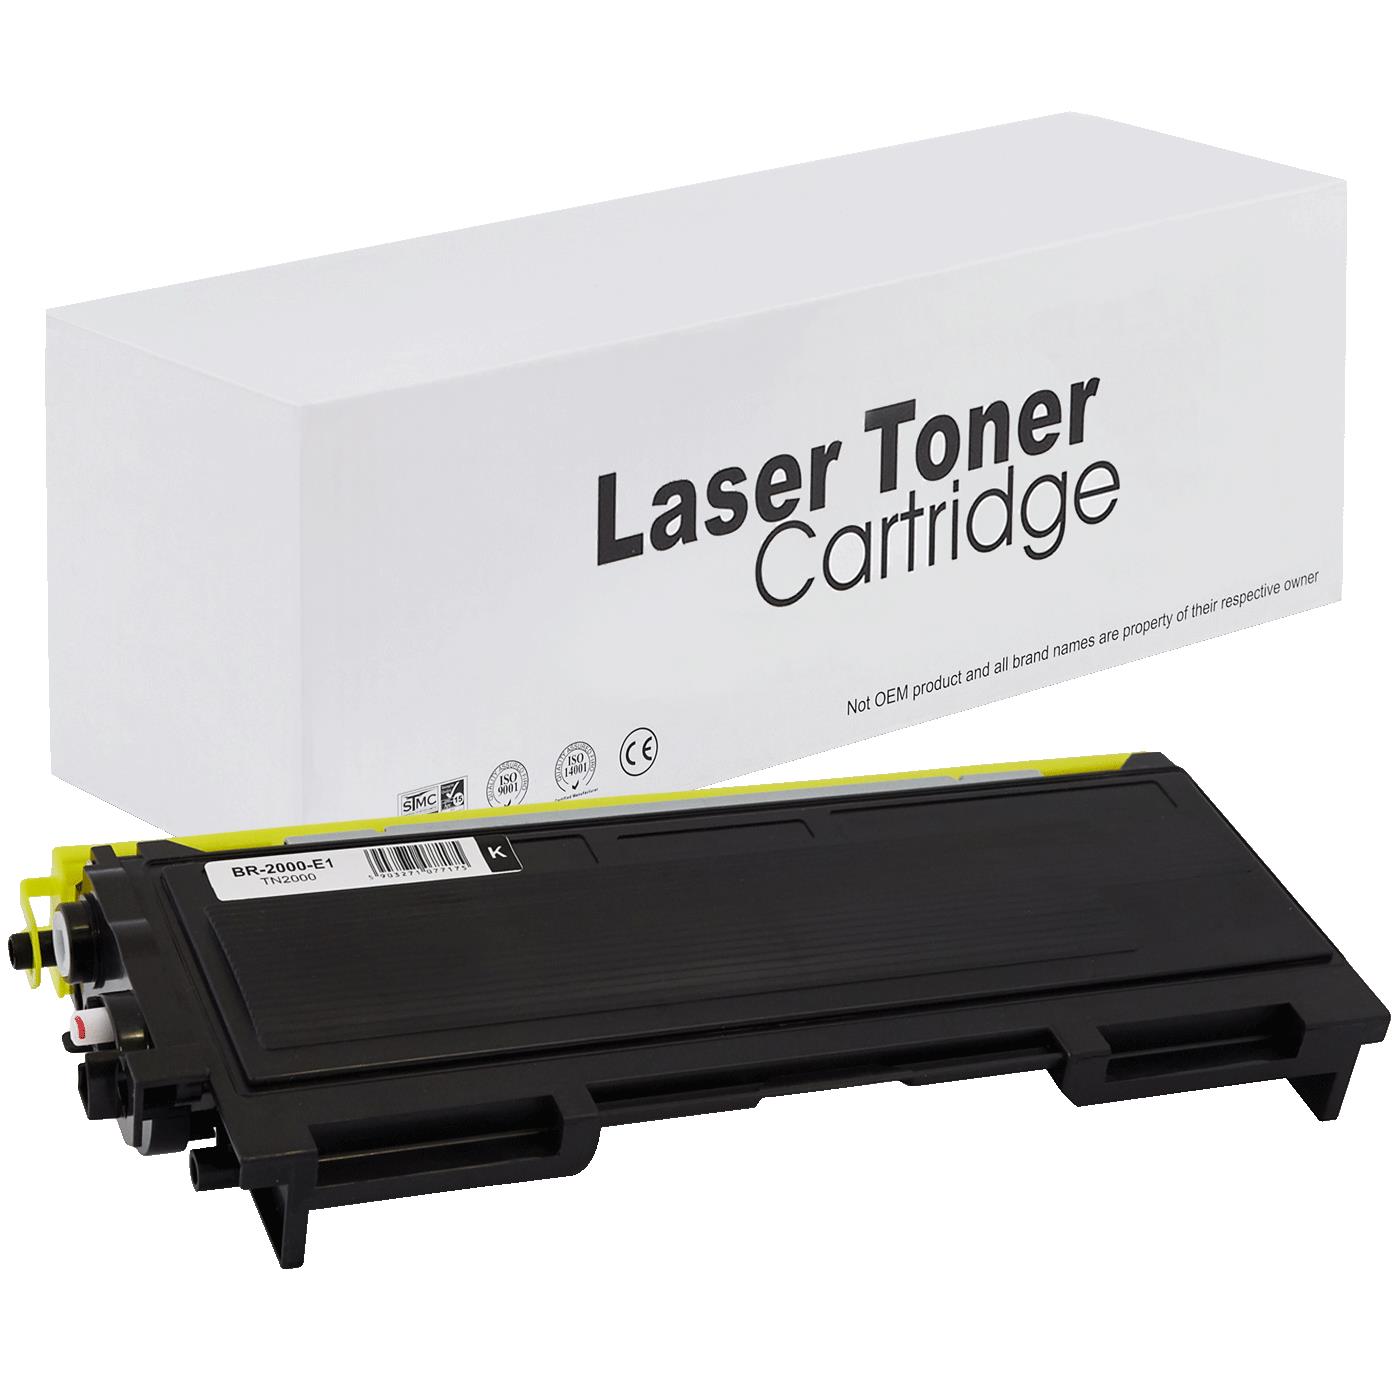 съвместима тонер касета за принтери и печатащи устройства на Brother MFC 7220 Toner BR-2000 | TN2000. Ниски цени, прецизно изпълнение, високо качество.